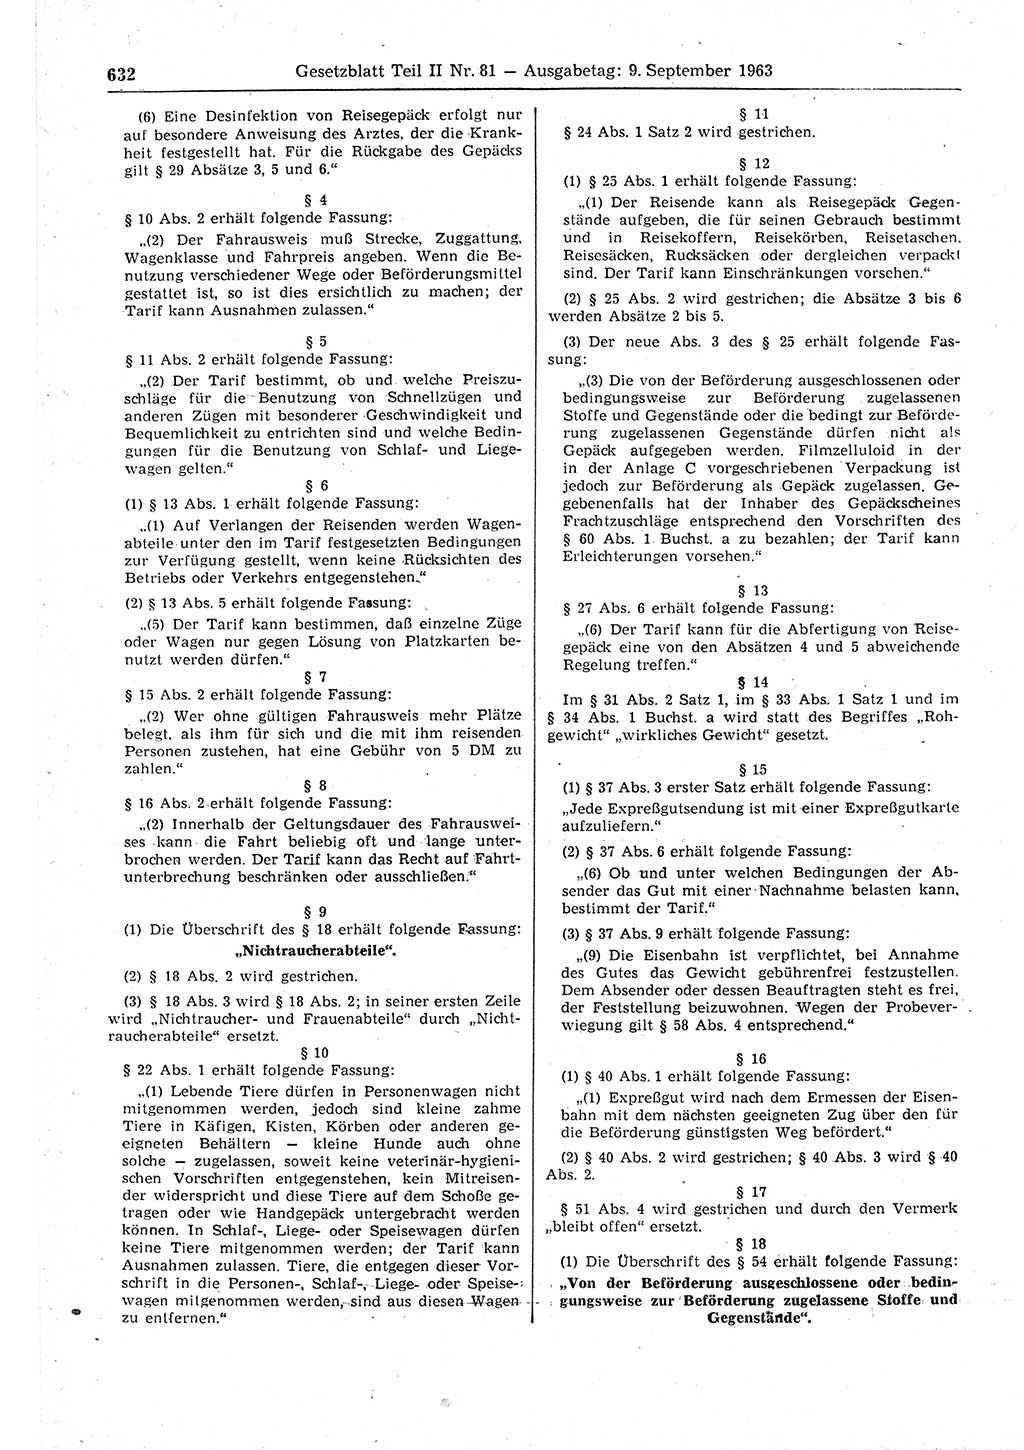 Gesetzblatt (GBl.) der Deutschen Demokratischen Republik (DDR) Teil ⅠⅠ 1963, Seite 632 (GBl. DDR ⅠⅠ 1963, S. 632)